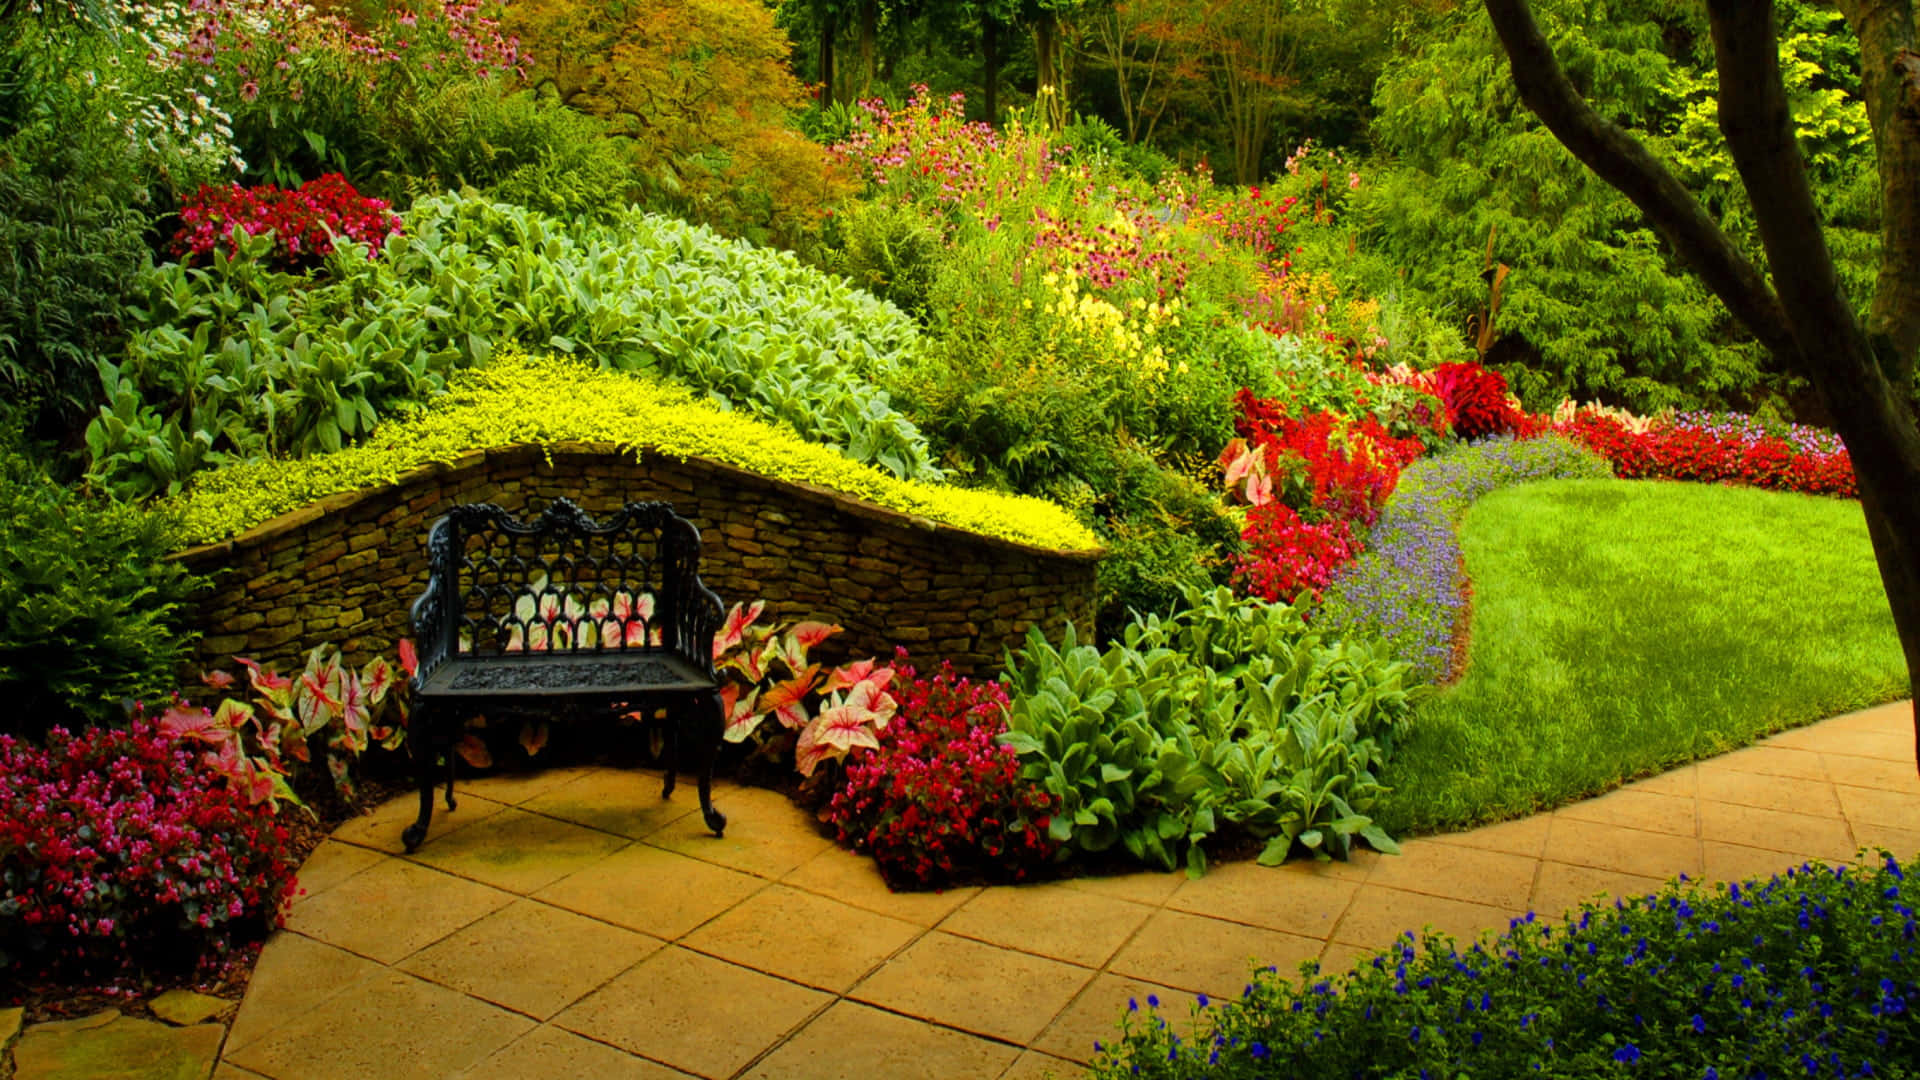 Unbanco Está Sentado En Un Jardín.